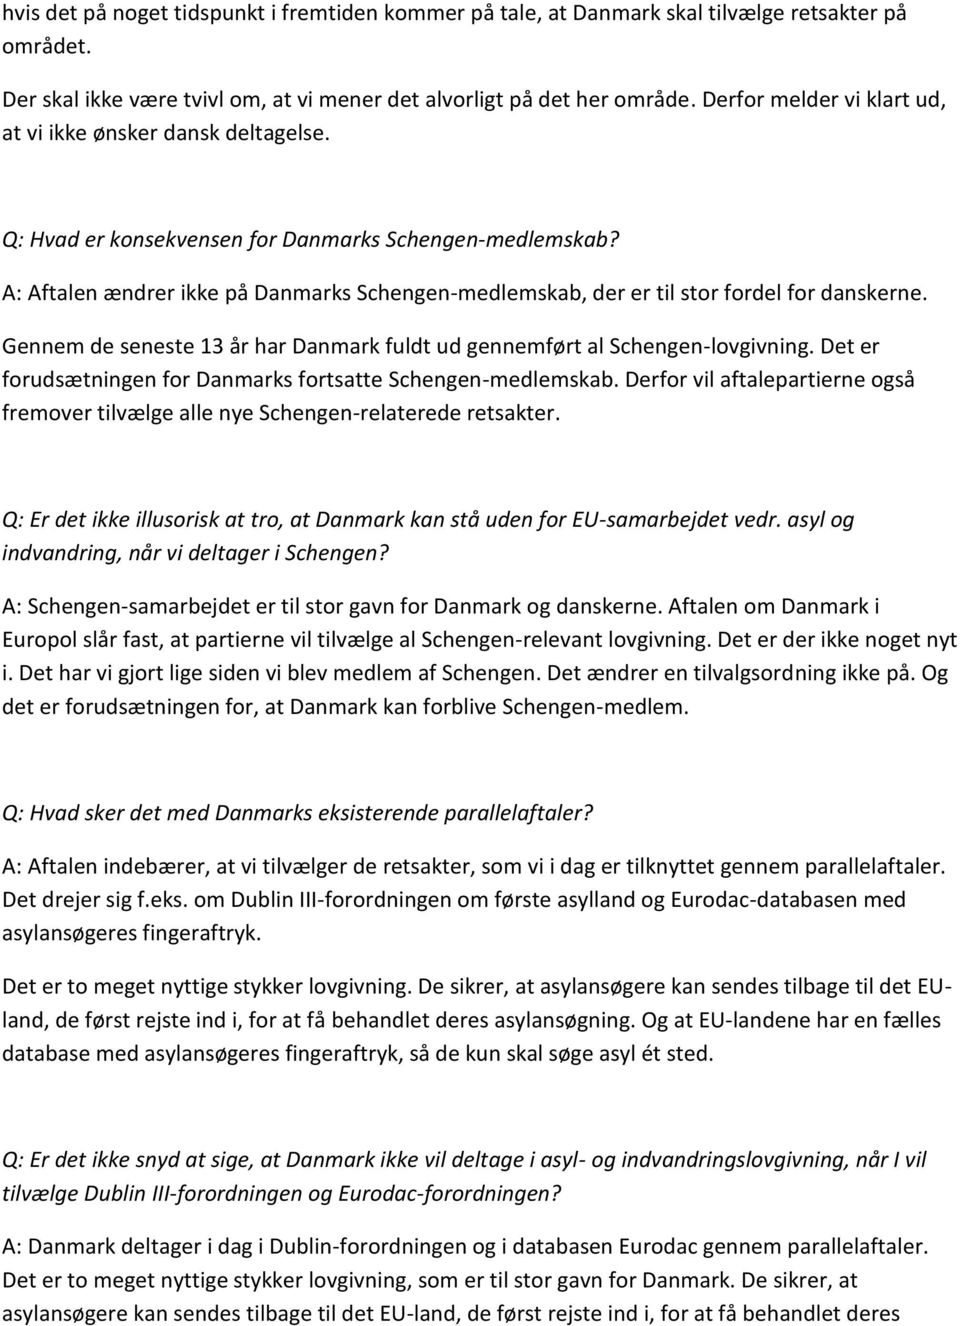 A: Aftalen ændrer ikke på Danmarks Schengen-medlemskab, der er til stor fordel for danskerne. Gennem de seneste 13 år har Danmark fuldt ud gennemført al Schengen-lovgivning.